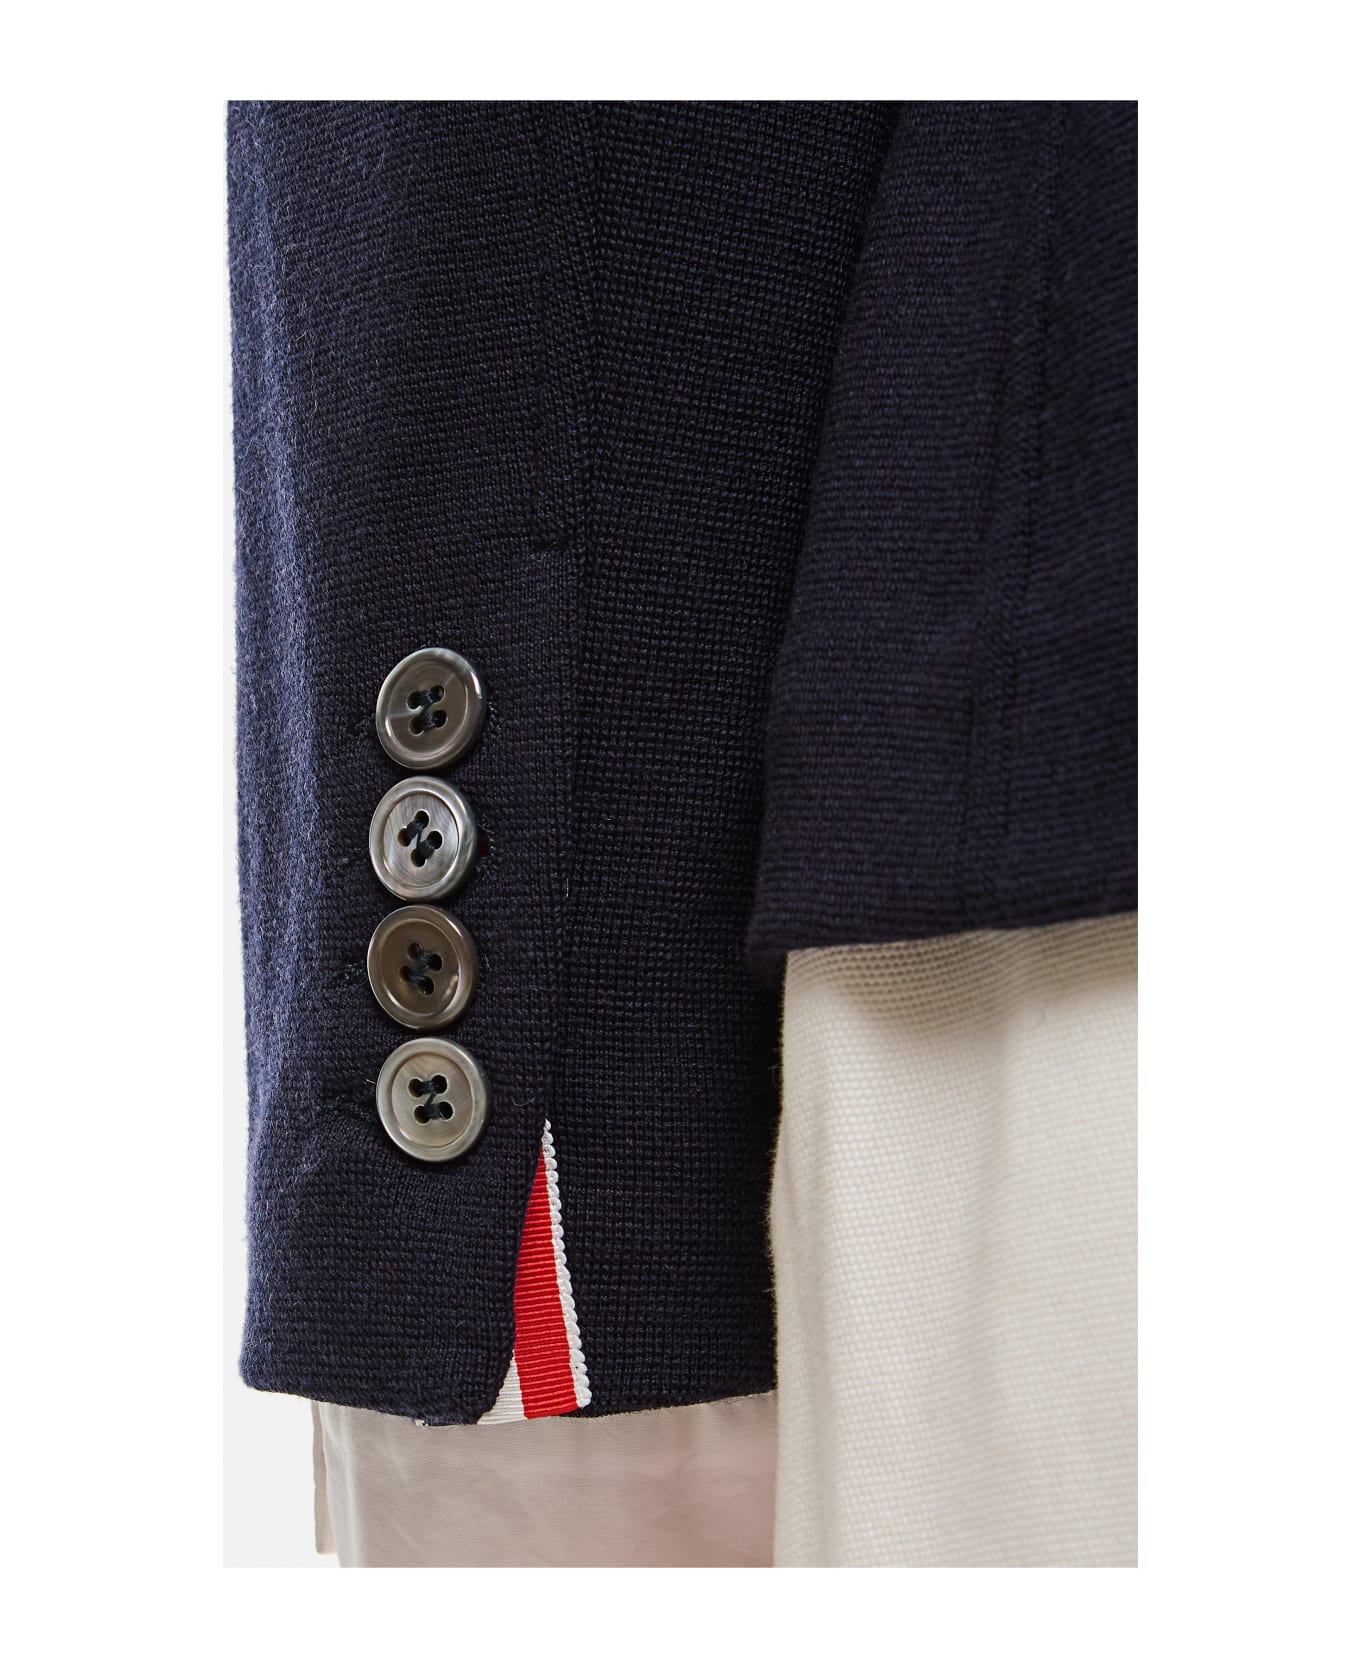 Thom Browne Cropped Sack Wool Jacket - Blue